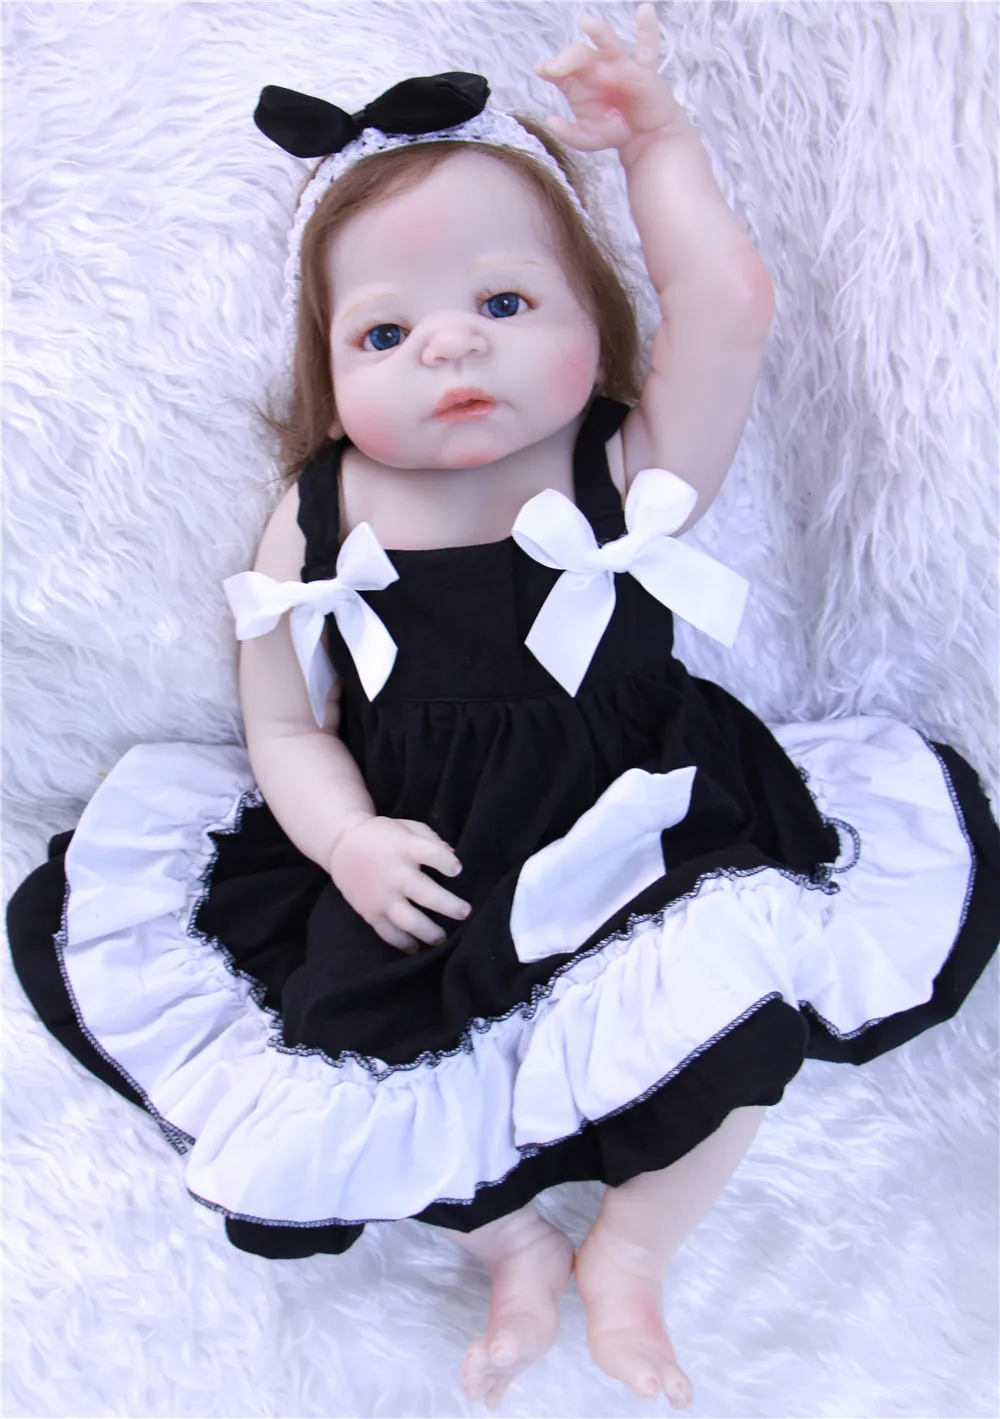 

Кукла реборн NPK силиконовая, полноразмерная Кукла-младенец, подарок для детей, кукла принцесса, кукла для купания, 23 дюйма